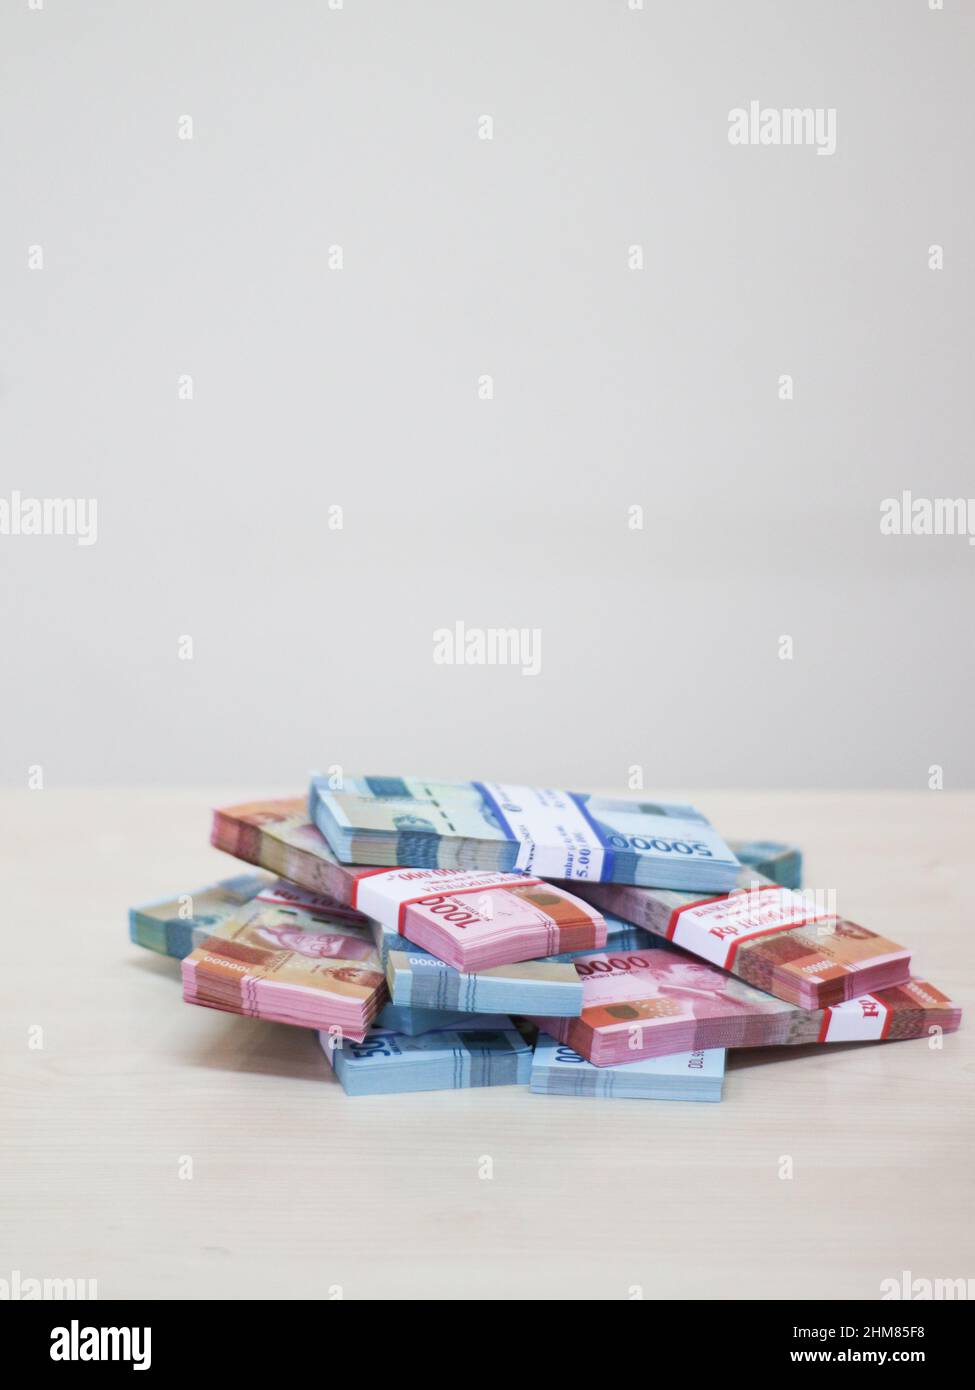 Money stack (Rupiah) Stock Photo